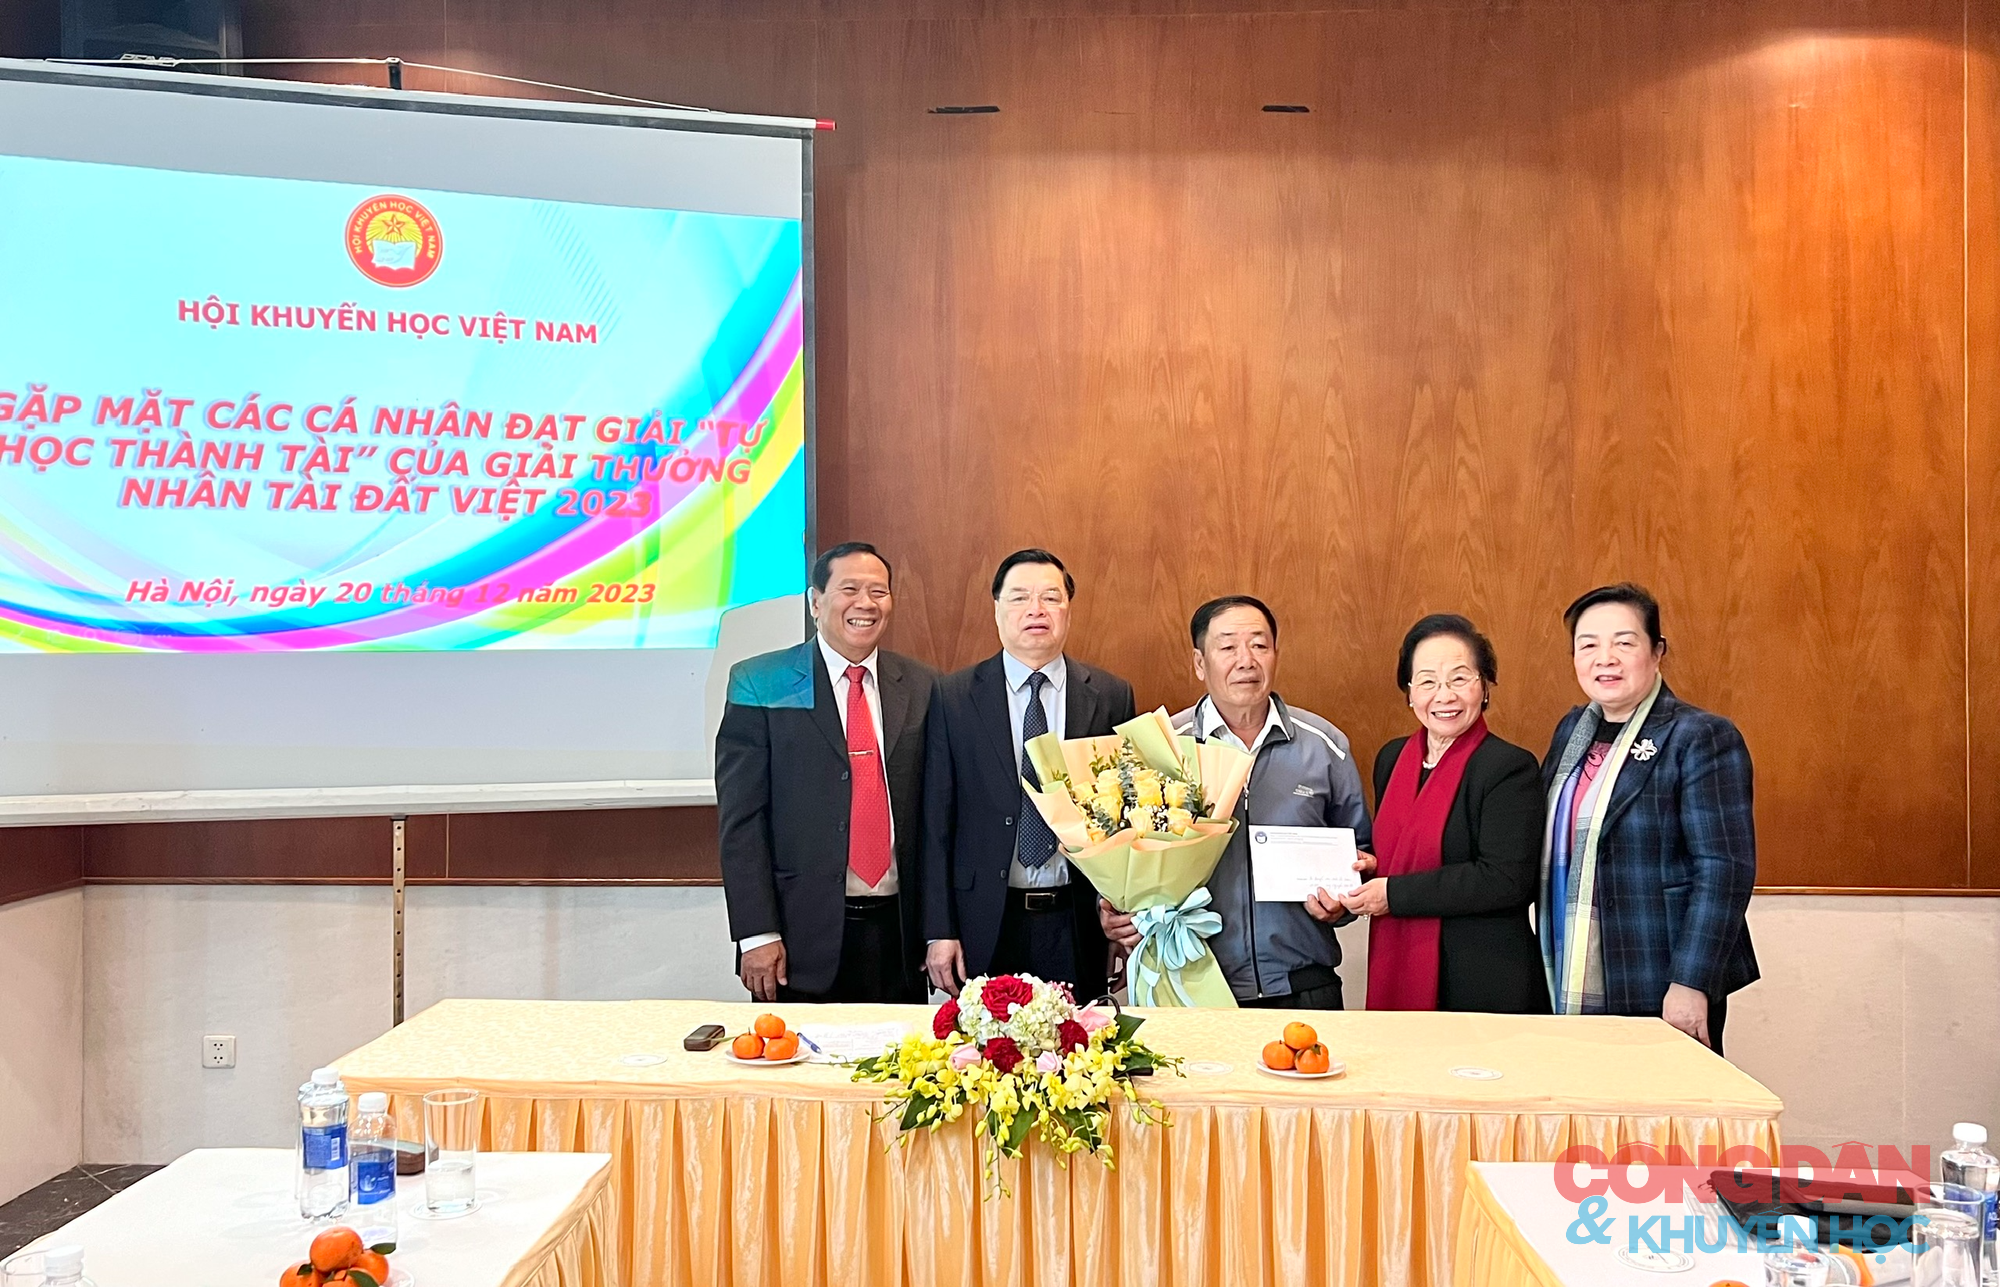 Gặp mặt các cá nhân đạt giải Tự học thành tài của Giải thưởng Nhân tài Đất Việt 2023- Ảnh 9.